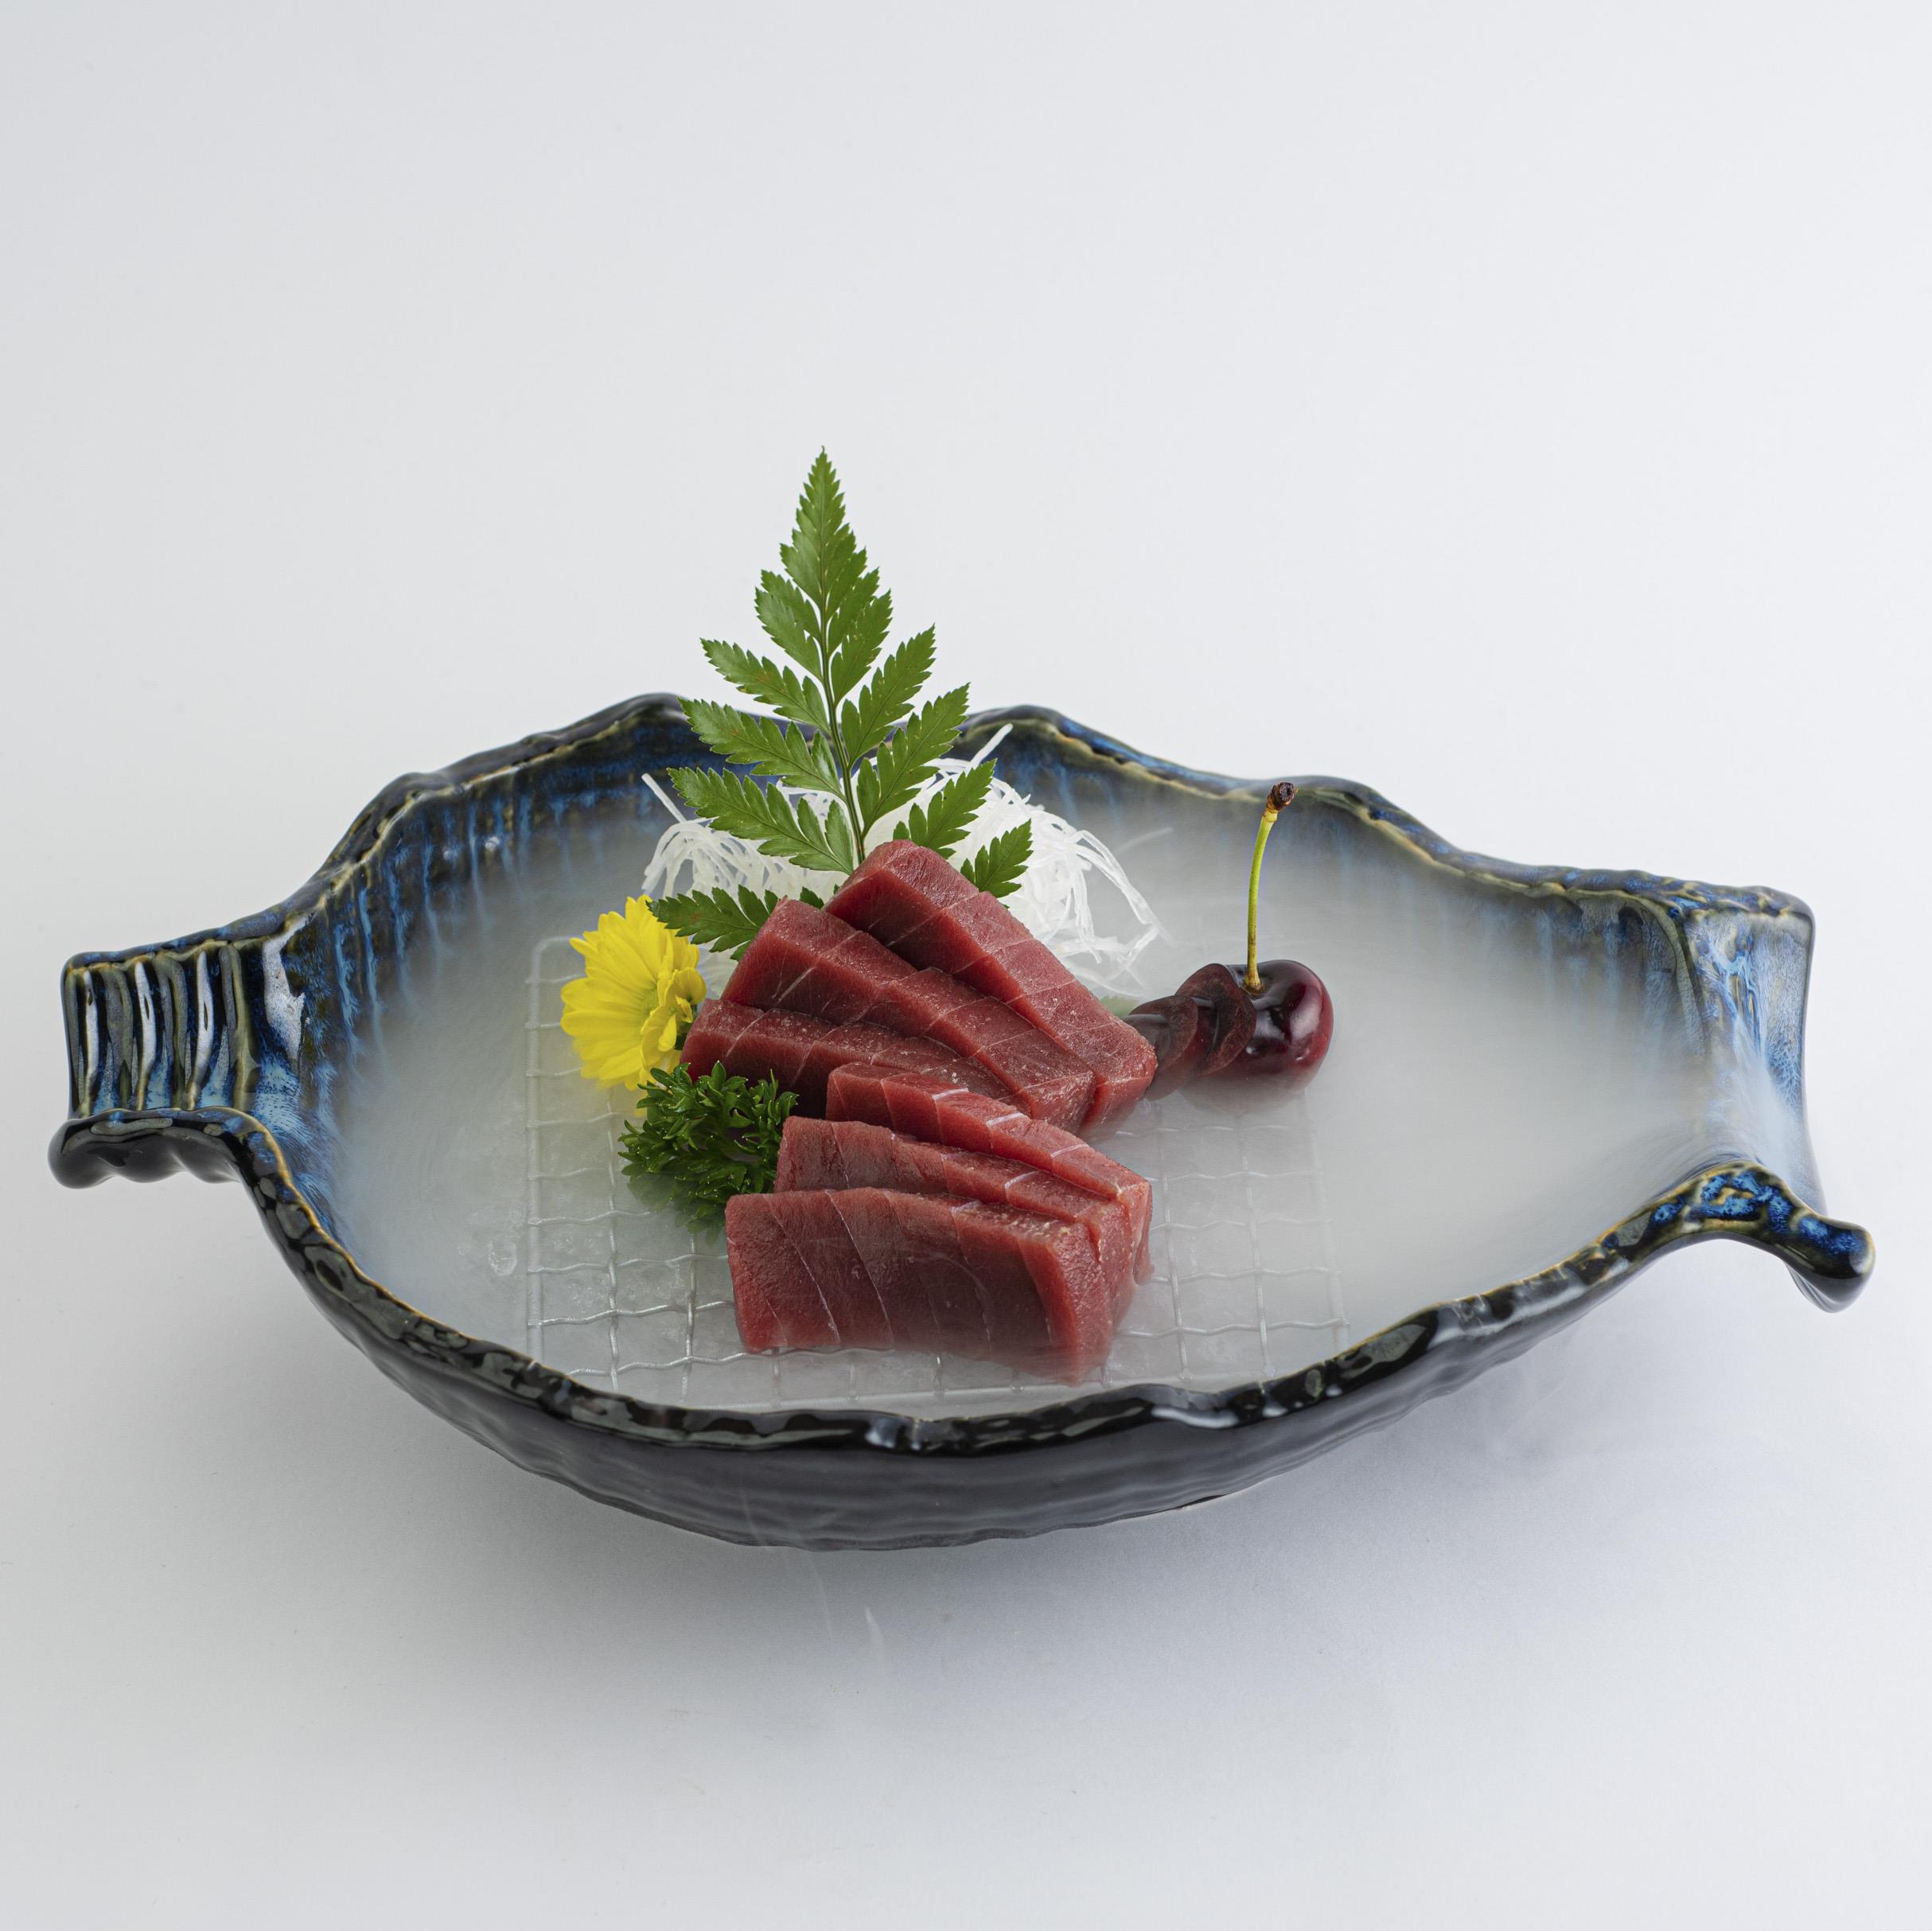 Hướng dẫn làm món Sashimi Cá Ngừ ngon bổ dưỡng